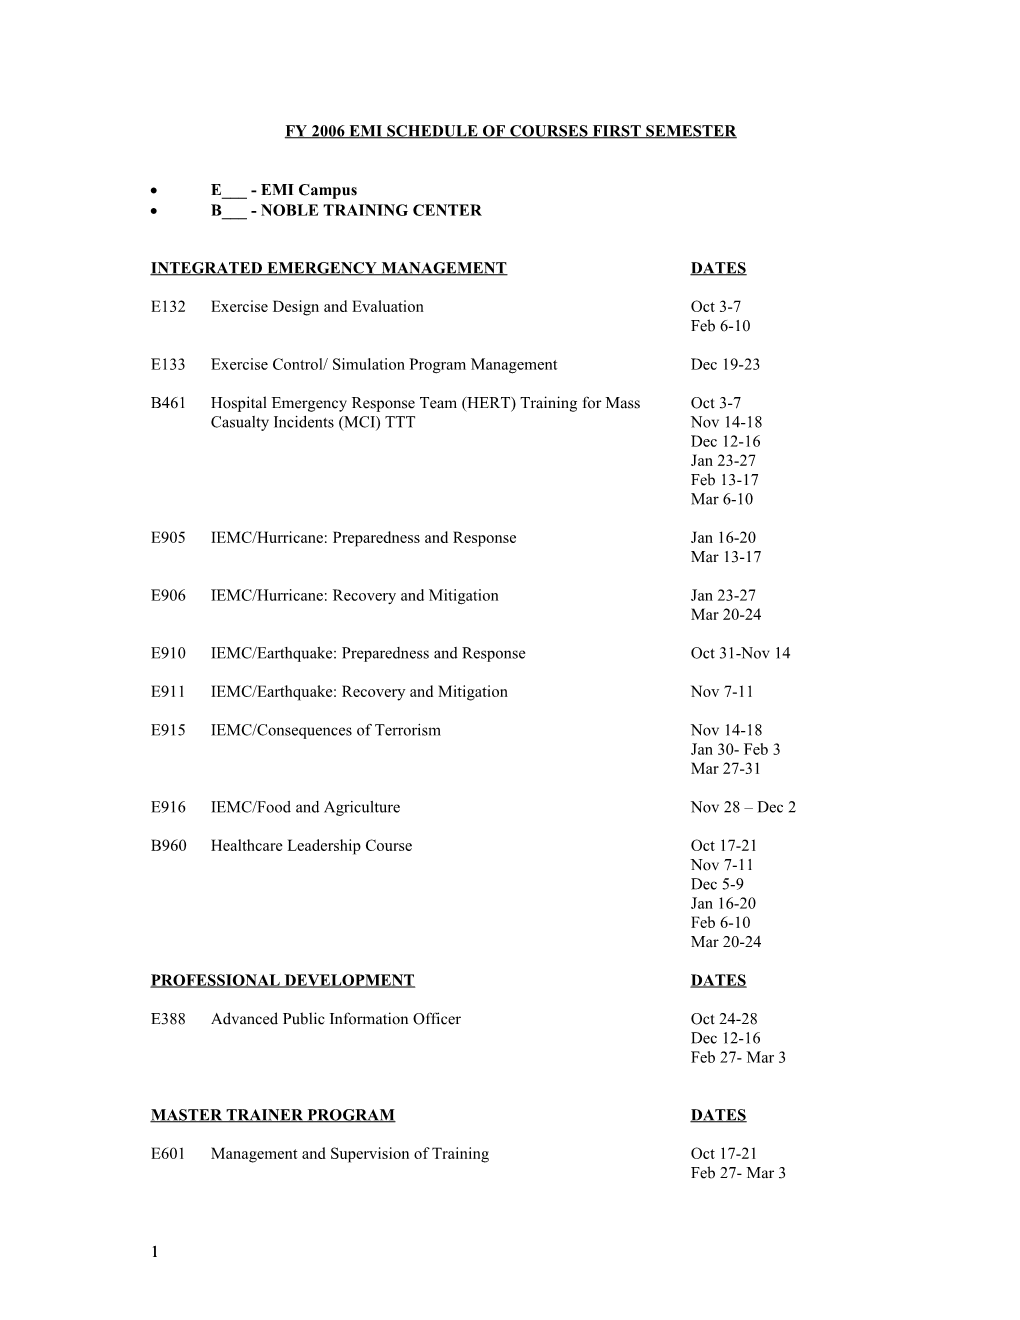 Fy 2005 Emi Schedule of Courses